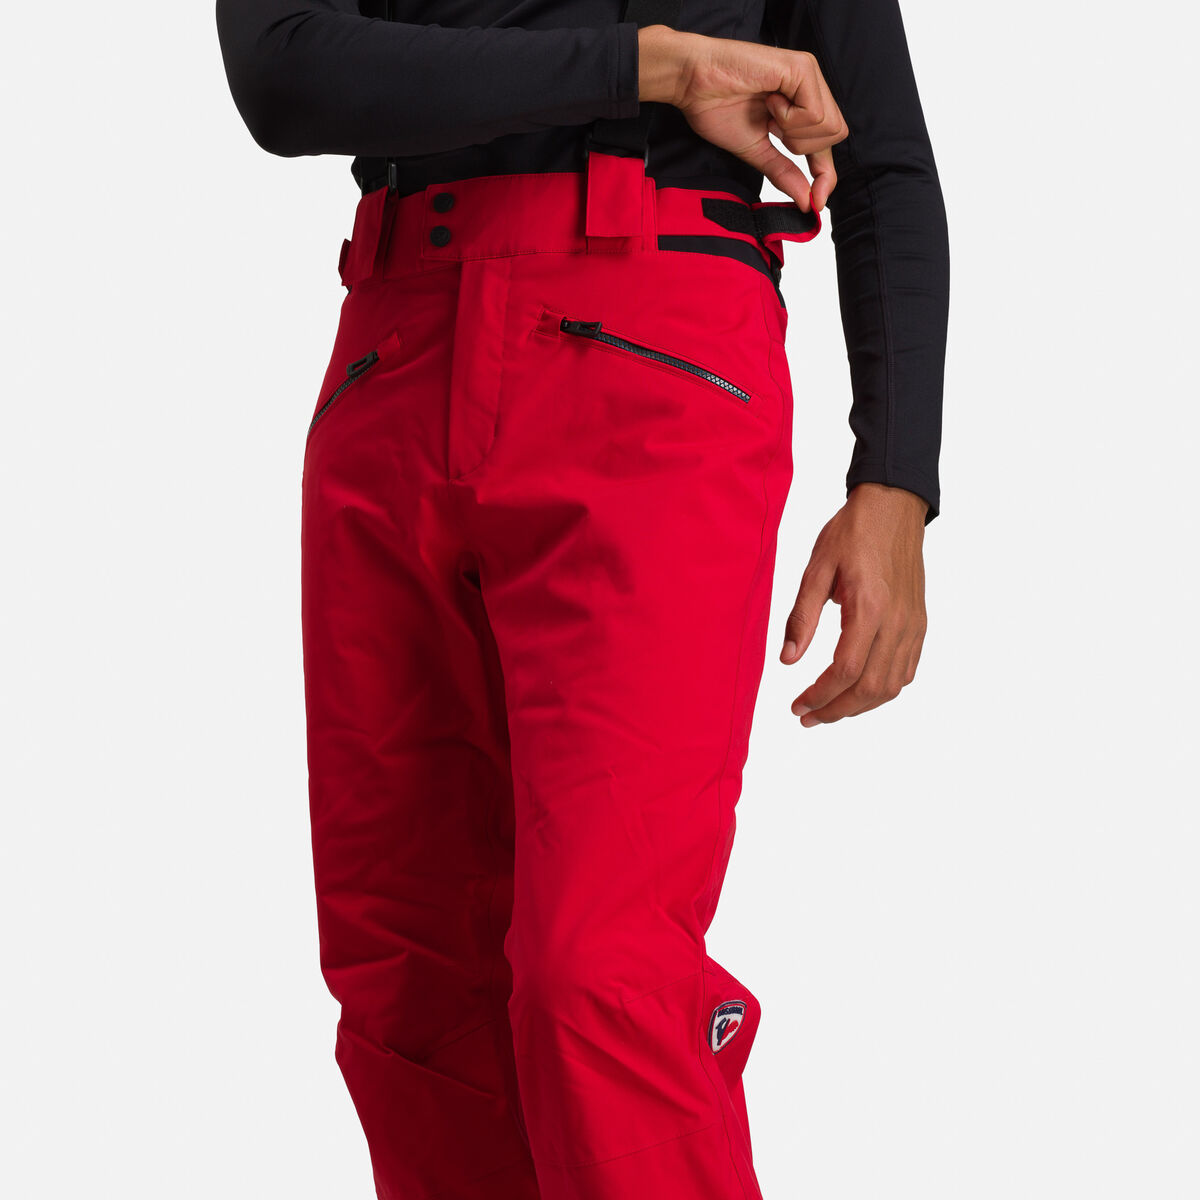 Rossignol Men's Classique Ski Pants red